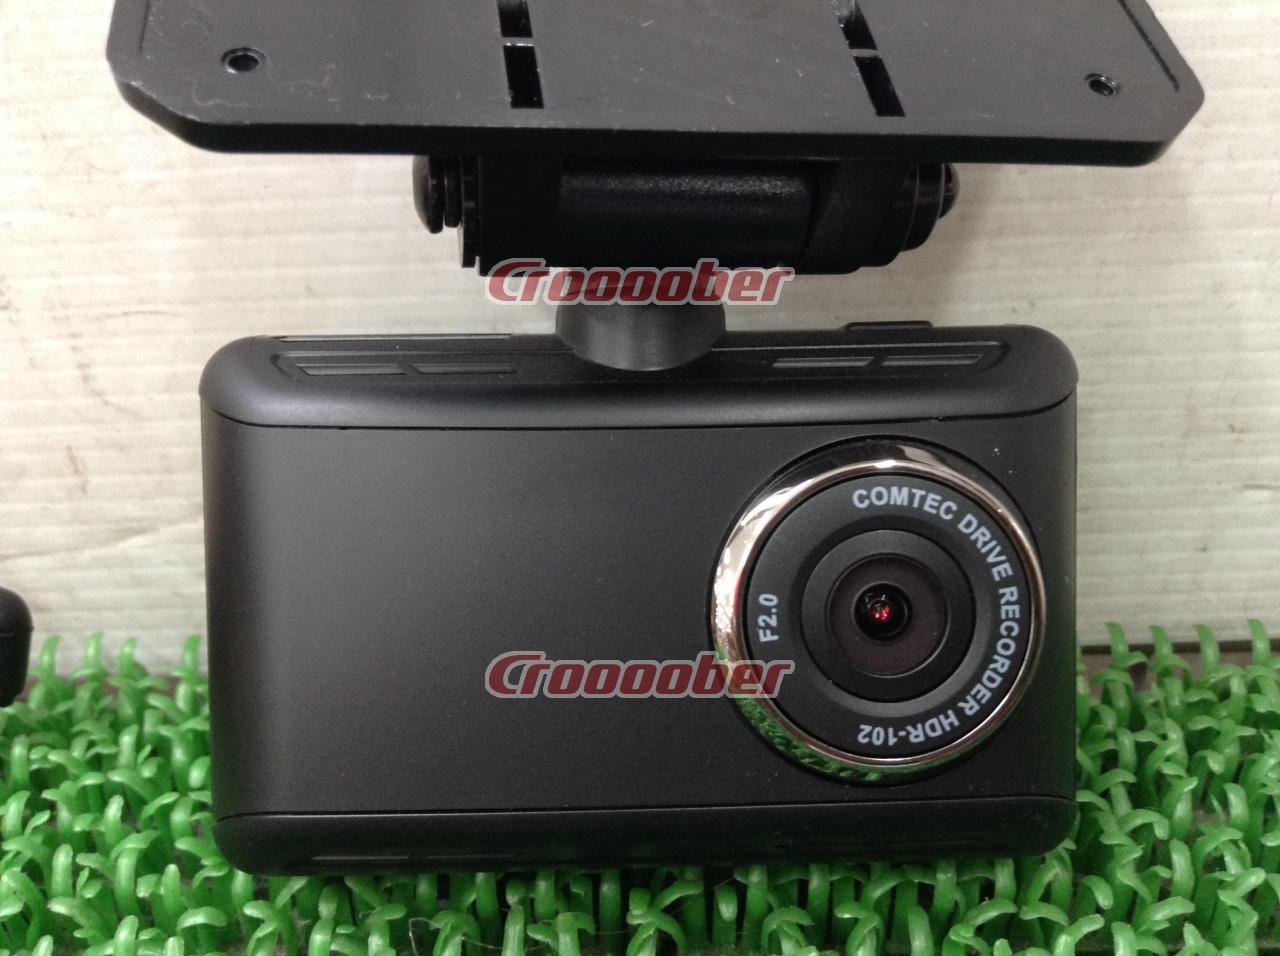 COMTEC HDR-102 | Drive Recorder | Croooober